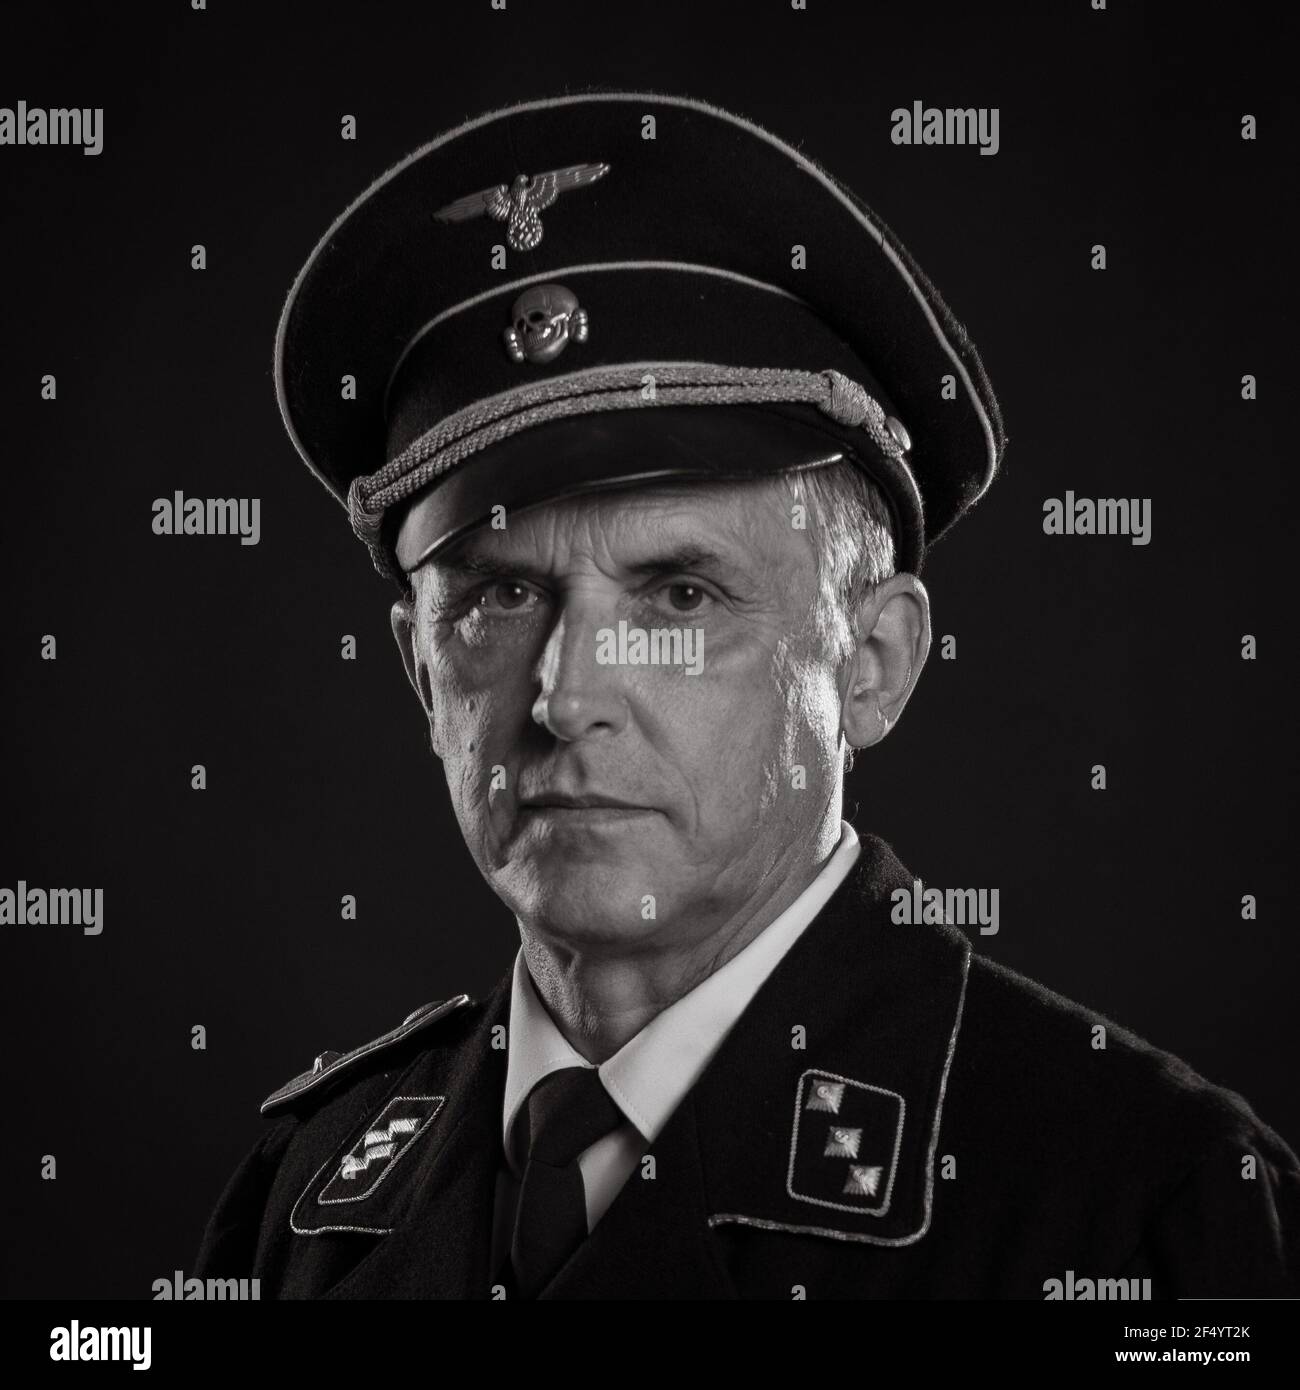 Mann Schauspieler in historischer Militäruniform als Offizier der deutschen Armee während des Zweiten Weltkriegs, posiert auf einem schwarzen Hintergrund in einem blauen szenischen Licht Stockfoto